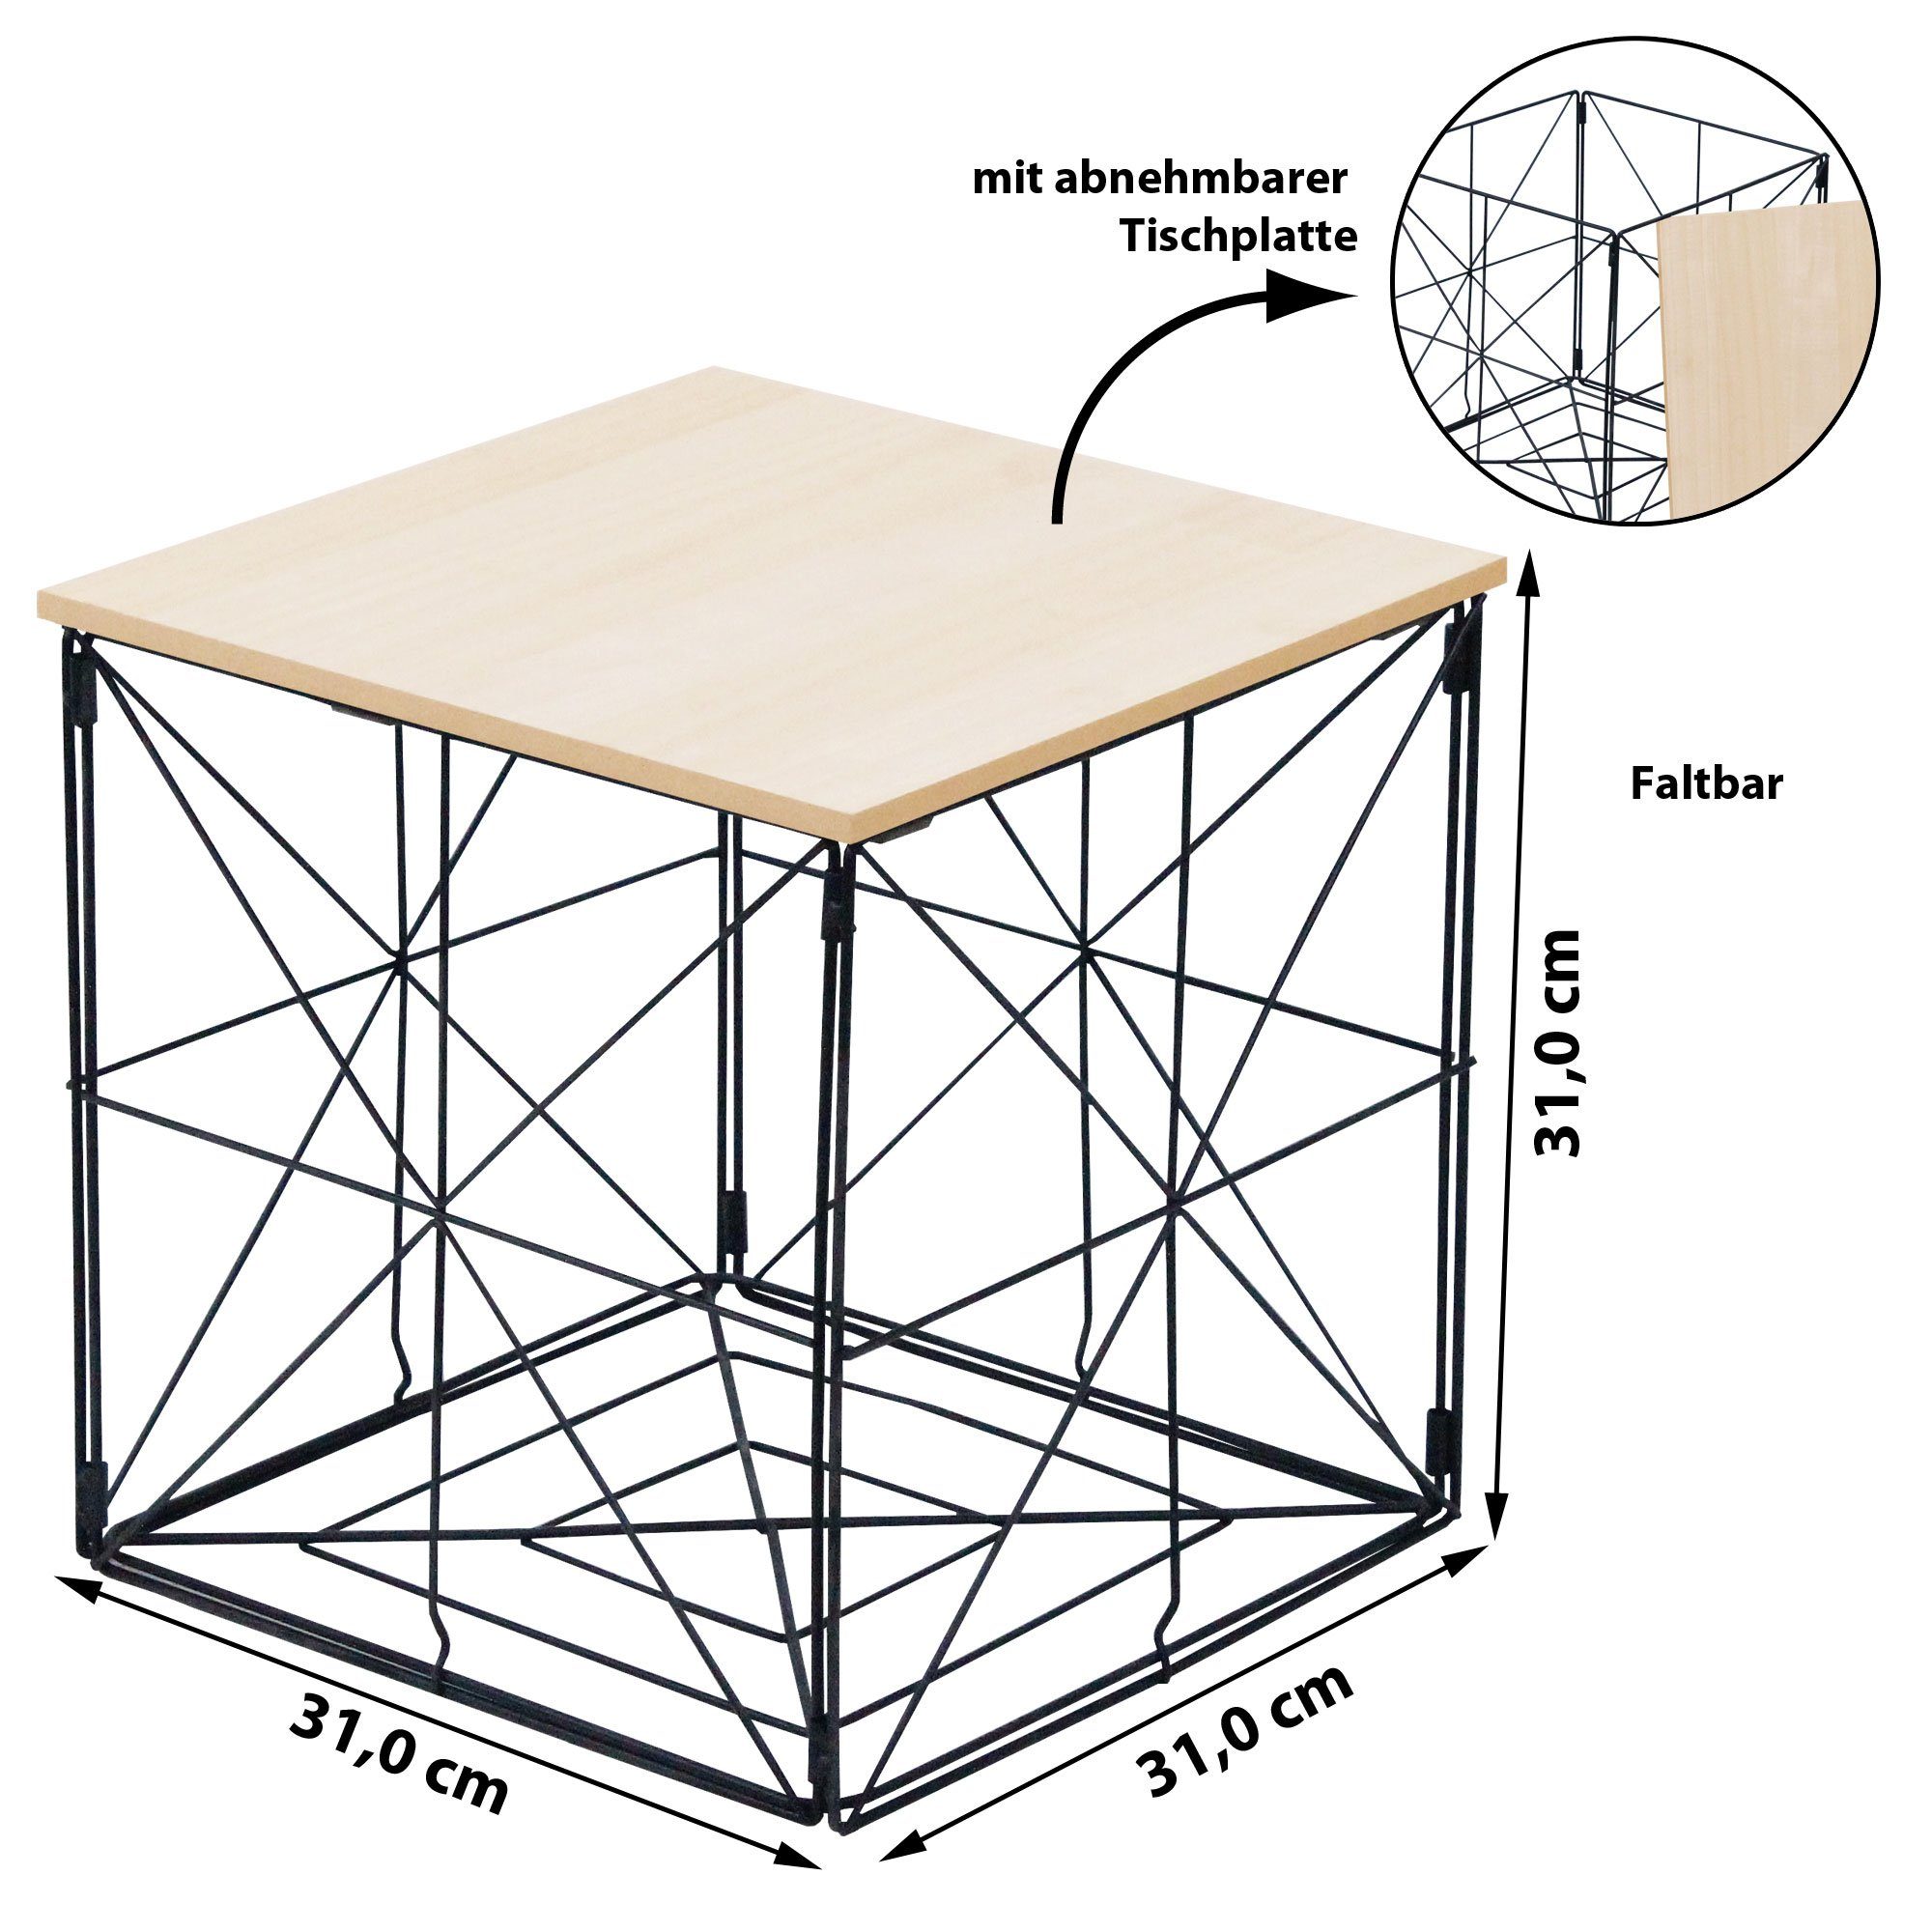 CEPEWA Beistelltisch Tischkorb Beistelltisch faltbar 31x31x31 cm